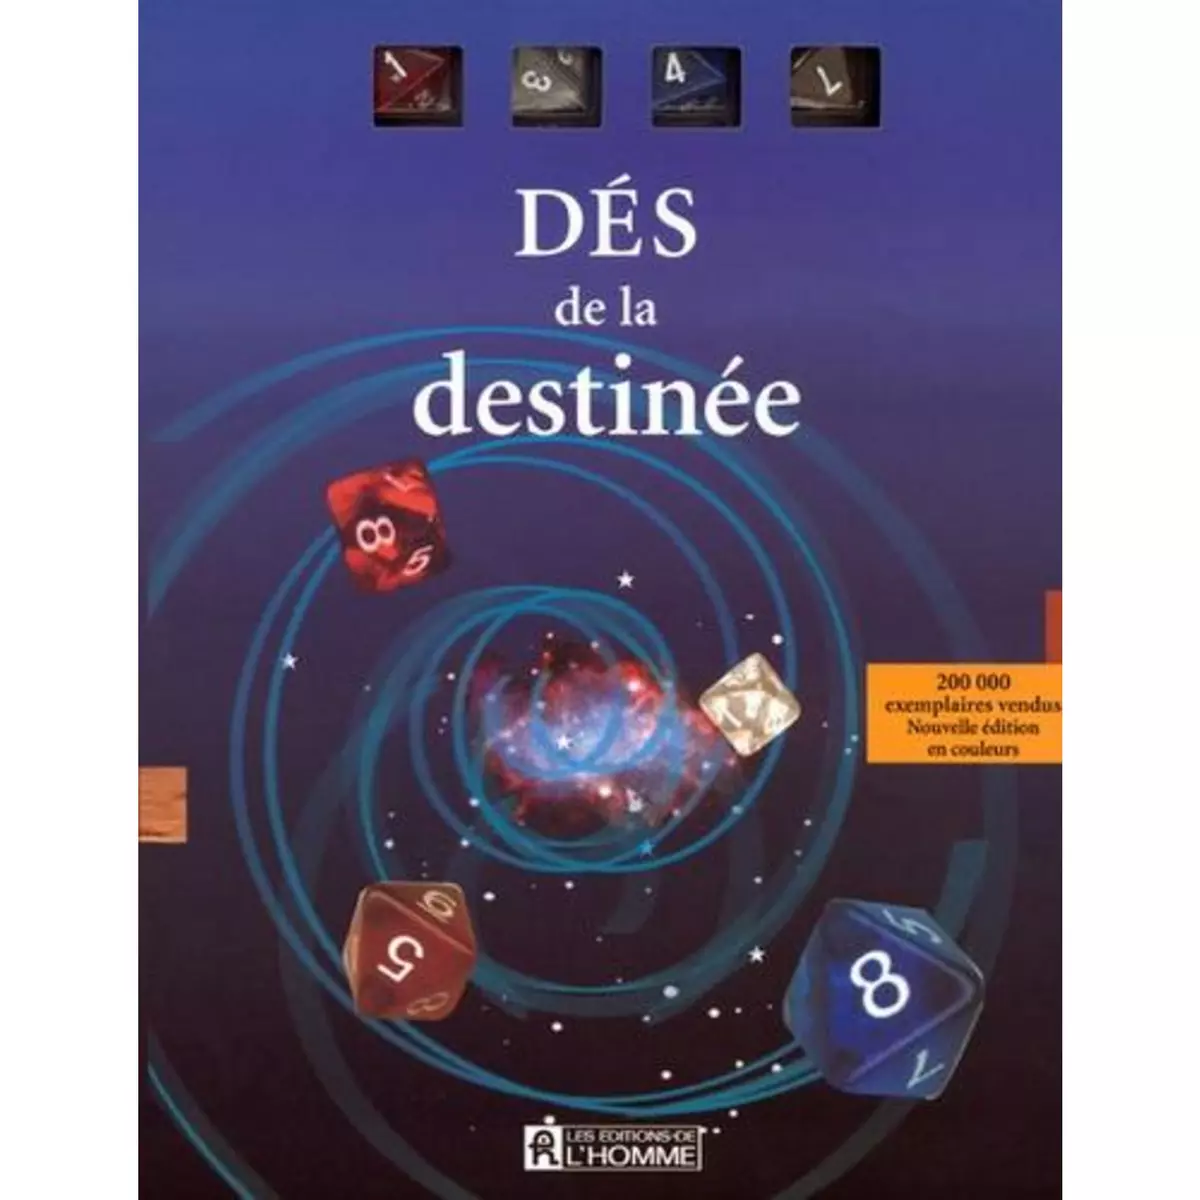  DES DE LA DESTINEE, Editions de l'Homme